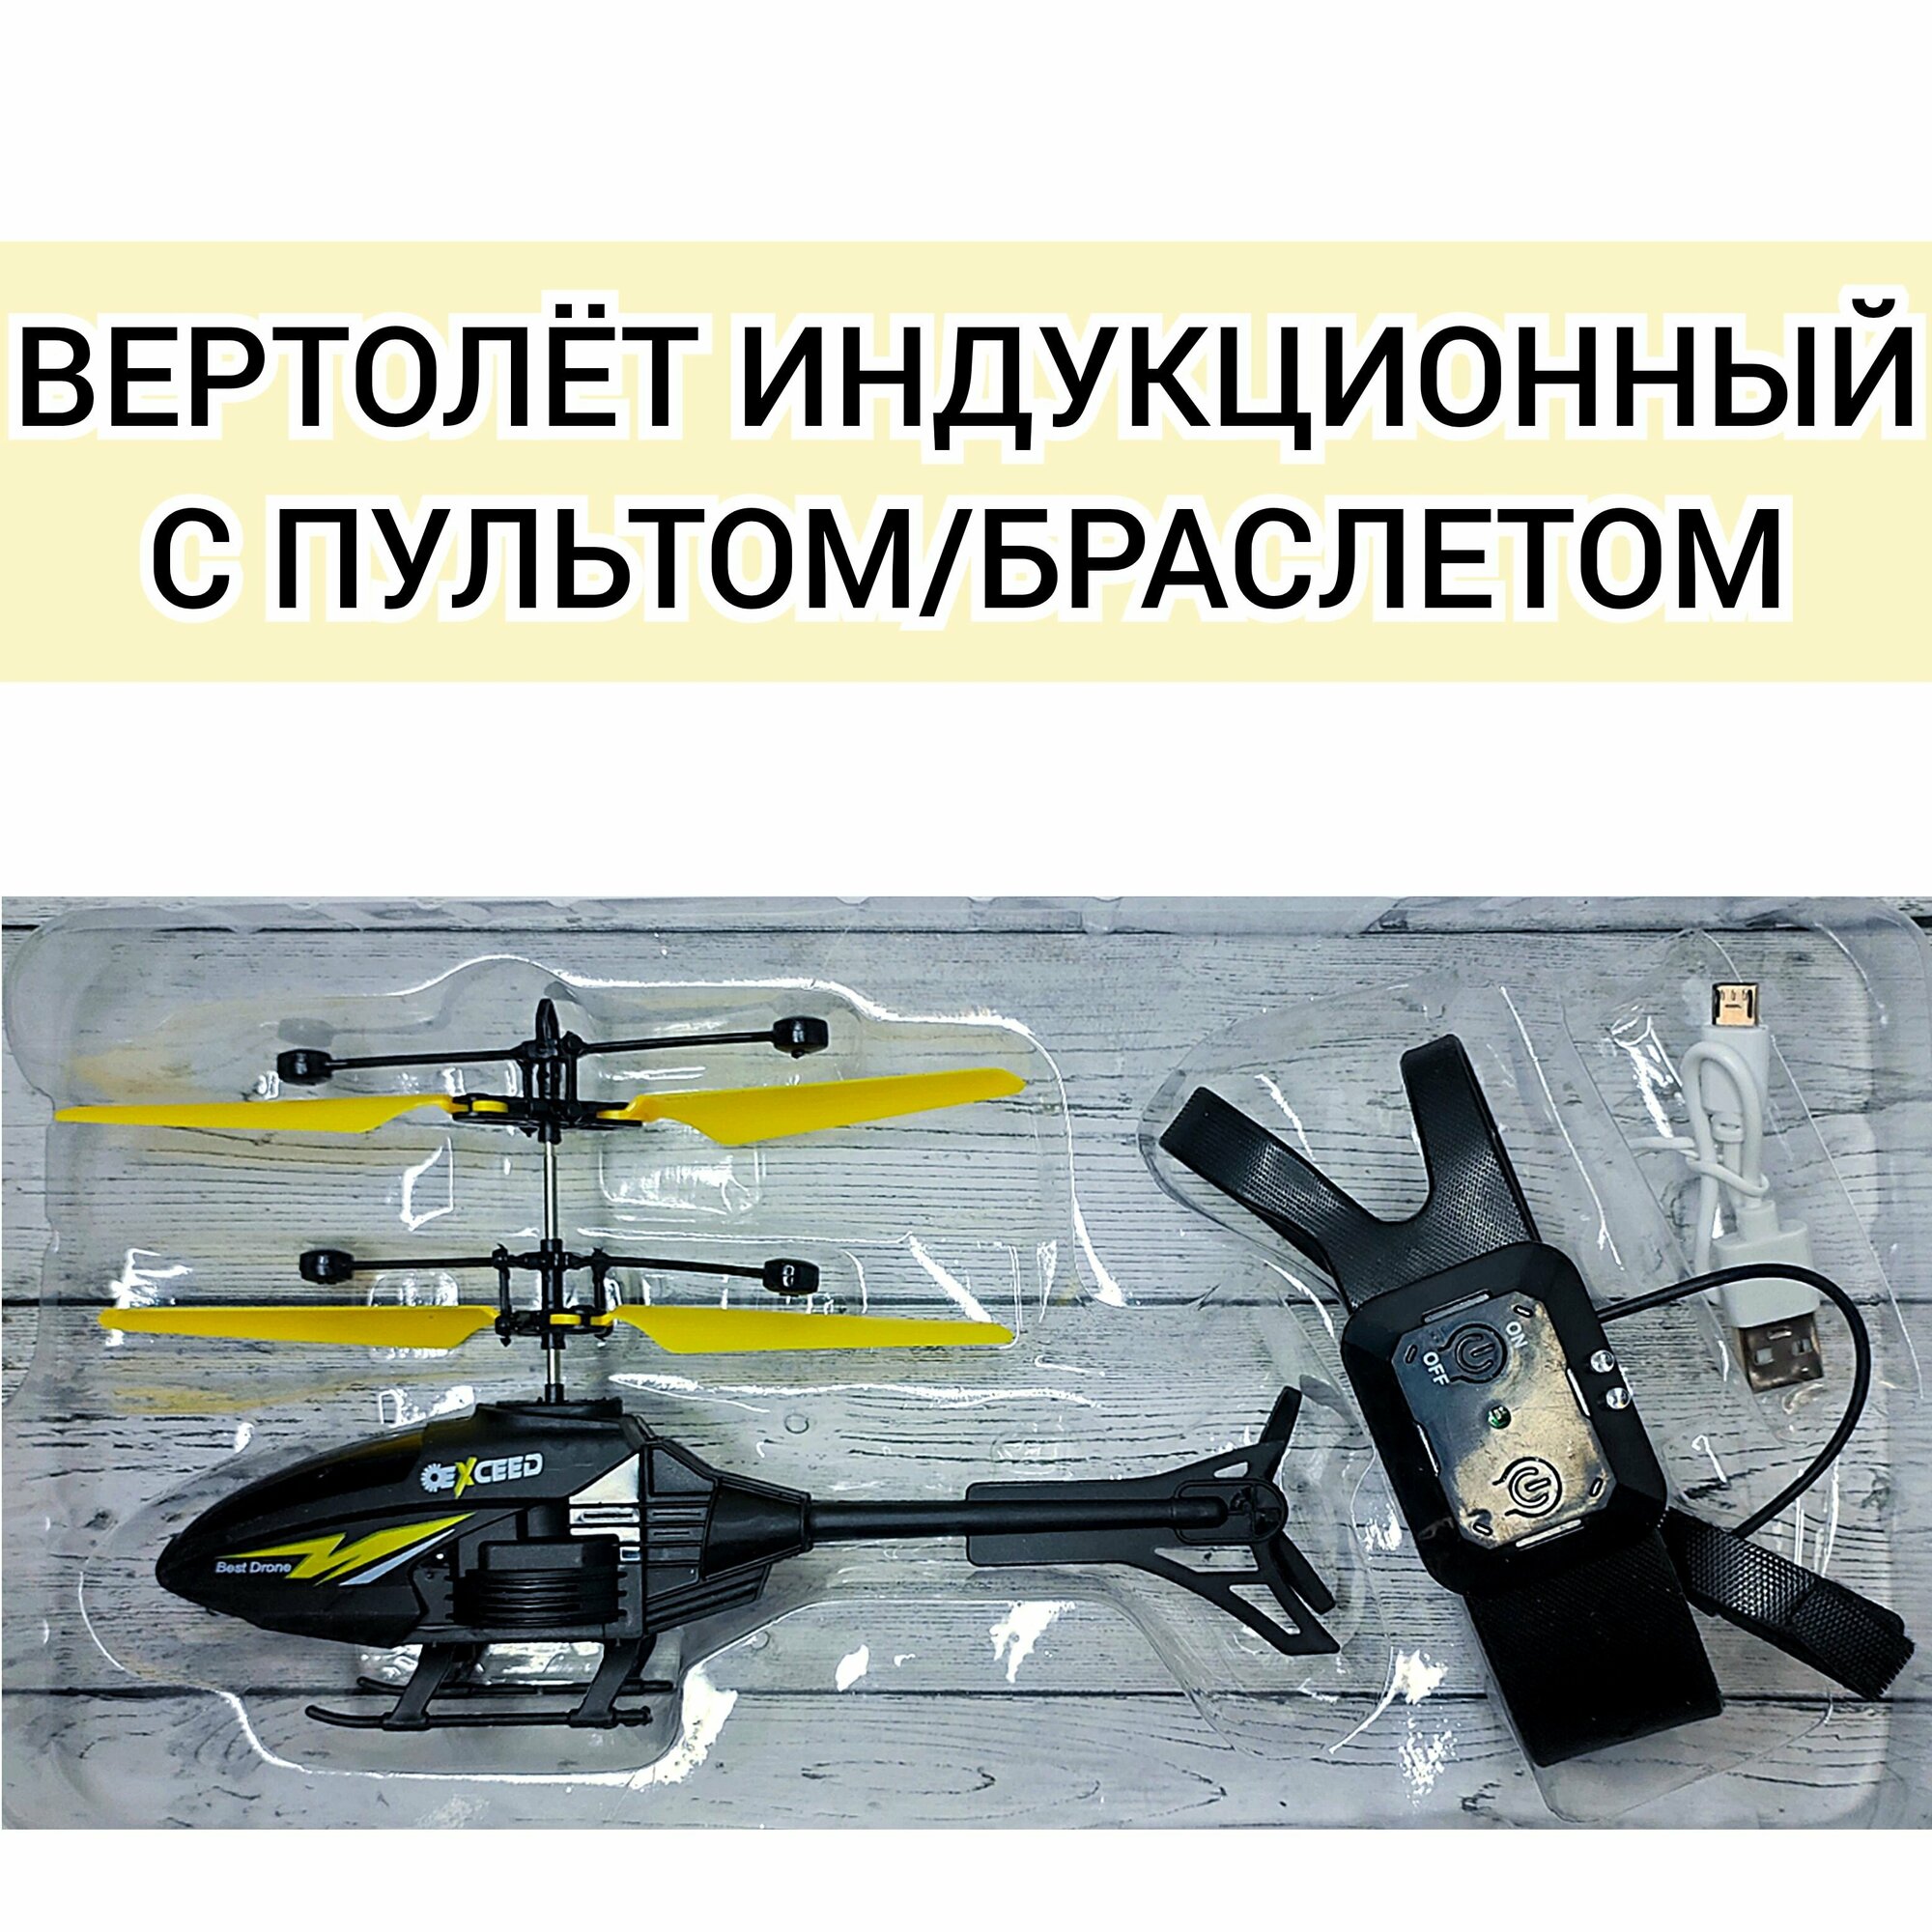 Вертолёт индукционный с пультом/браслетом, управляемый также рукой, желтый.